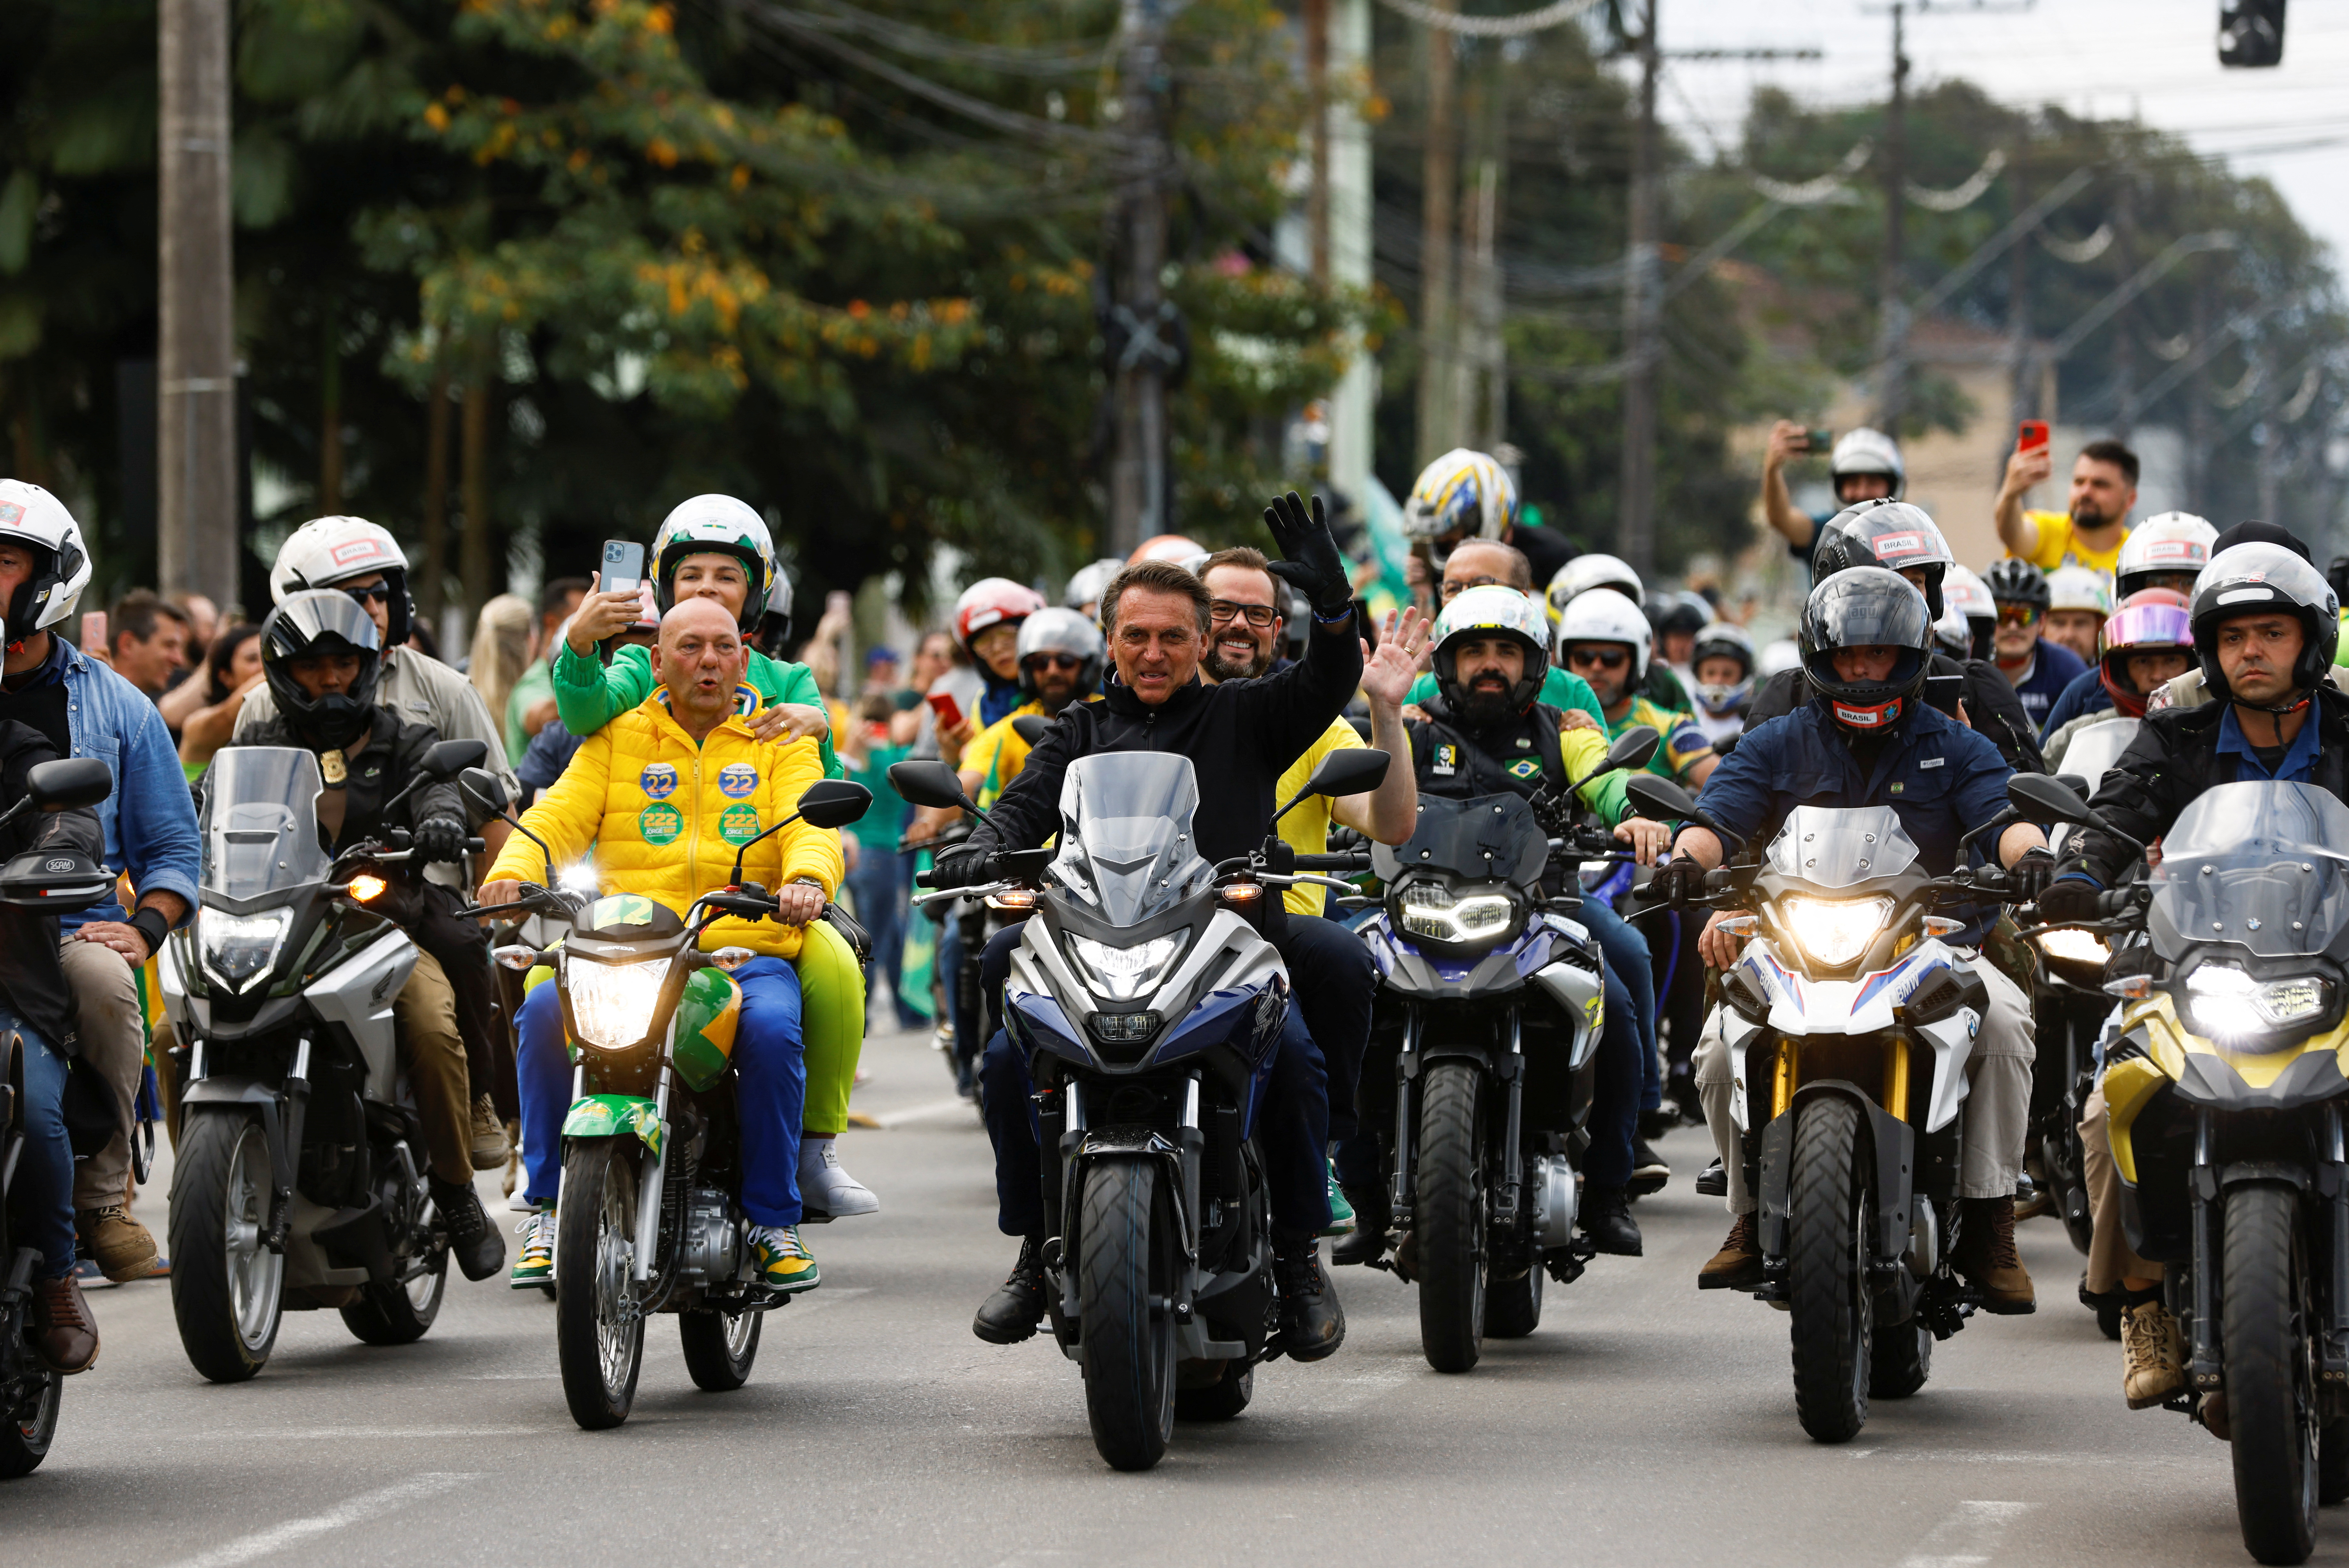 El presidente de Brasil y candidato a la reelección, Jair Bolsonaro, conduce una motocicleta mientras lidera una caravana en Joinville, Brasil 1 de octubre de 2022. REUTERS/Rodolfo Buhrer